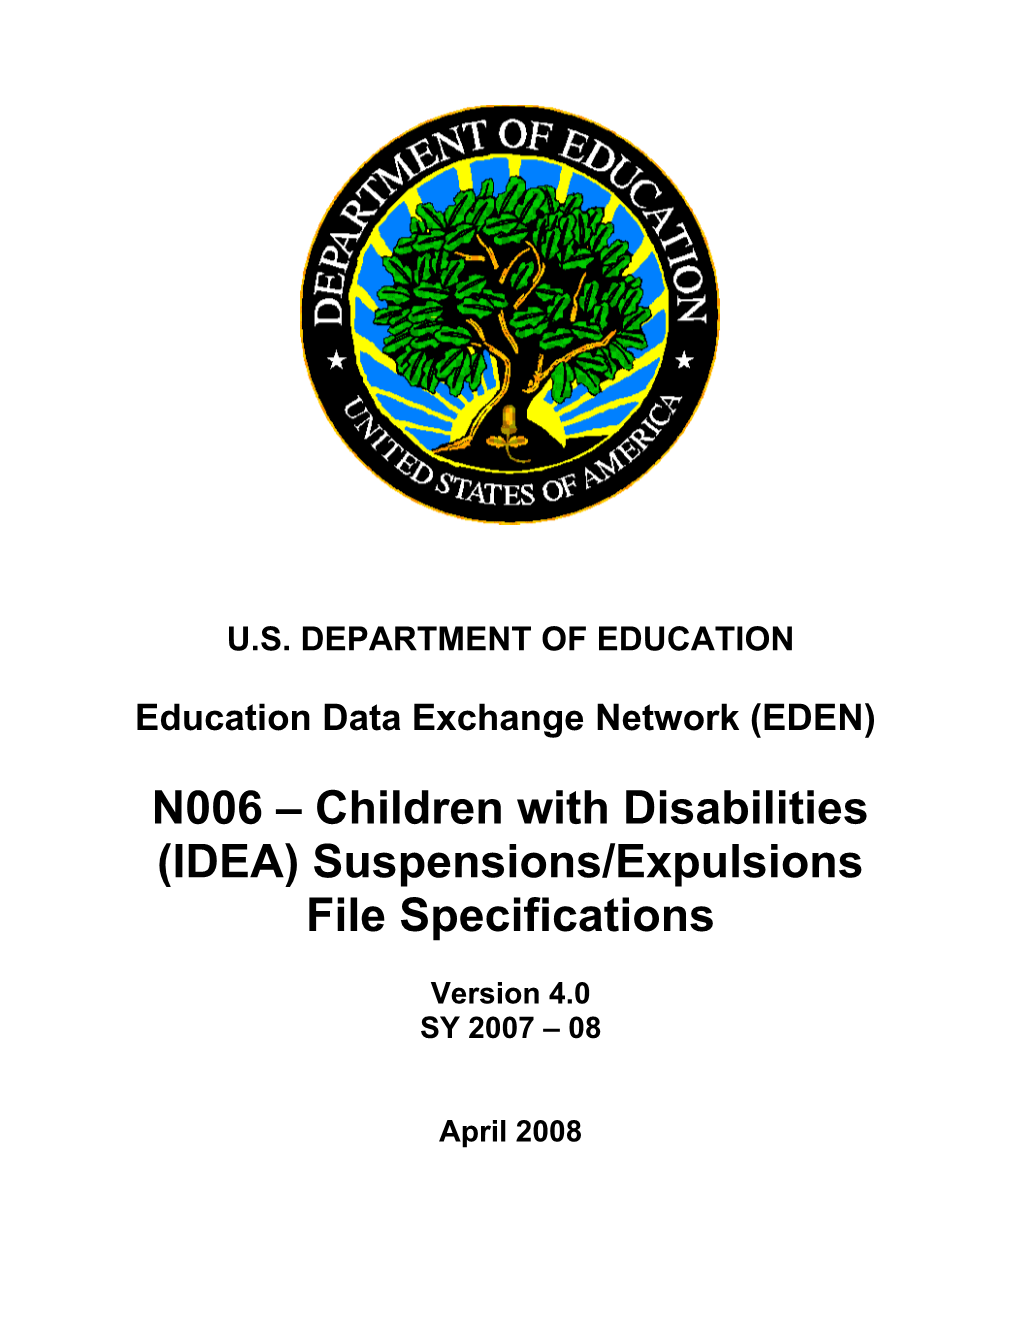 N006 - Child W Disab Susp Expul File Spec